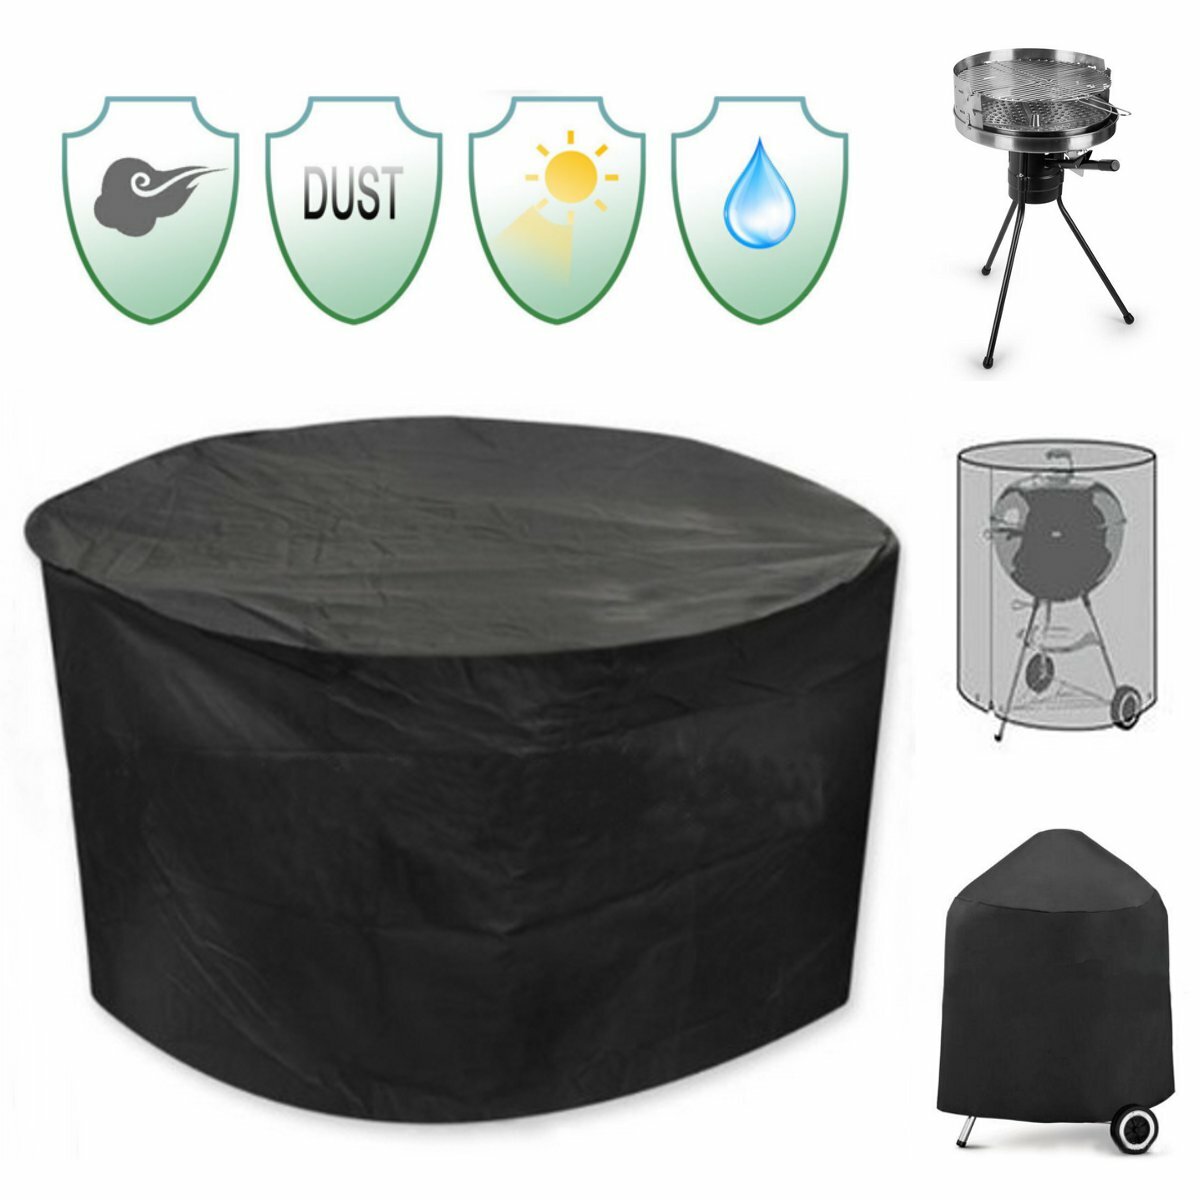 Capa protetora impermeável e contra raios UV para uma grelha redonda de pátio de 30 polegadas, cadeiras, mesa e abrigo preto